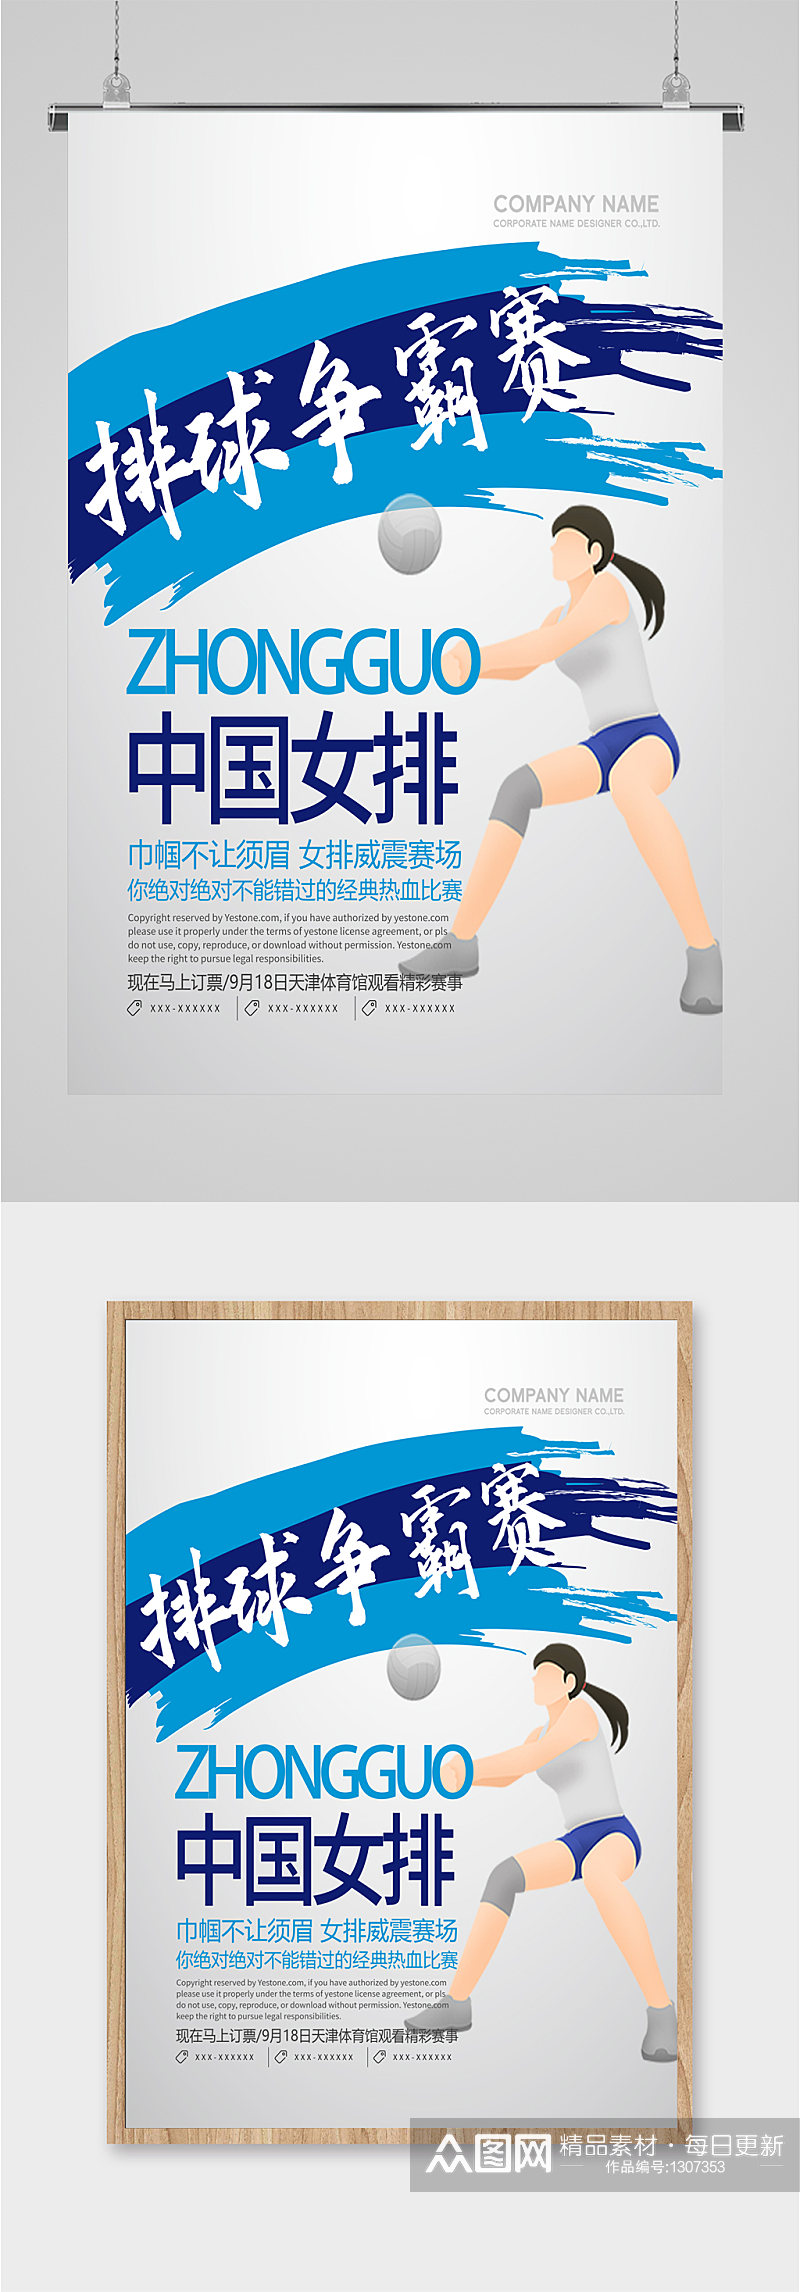 中国女排排球争霸赛海报素材